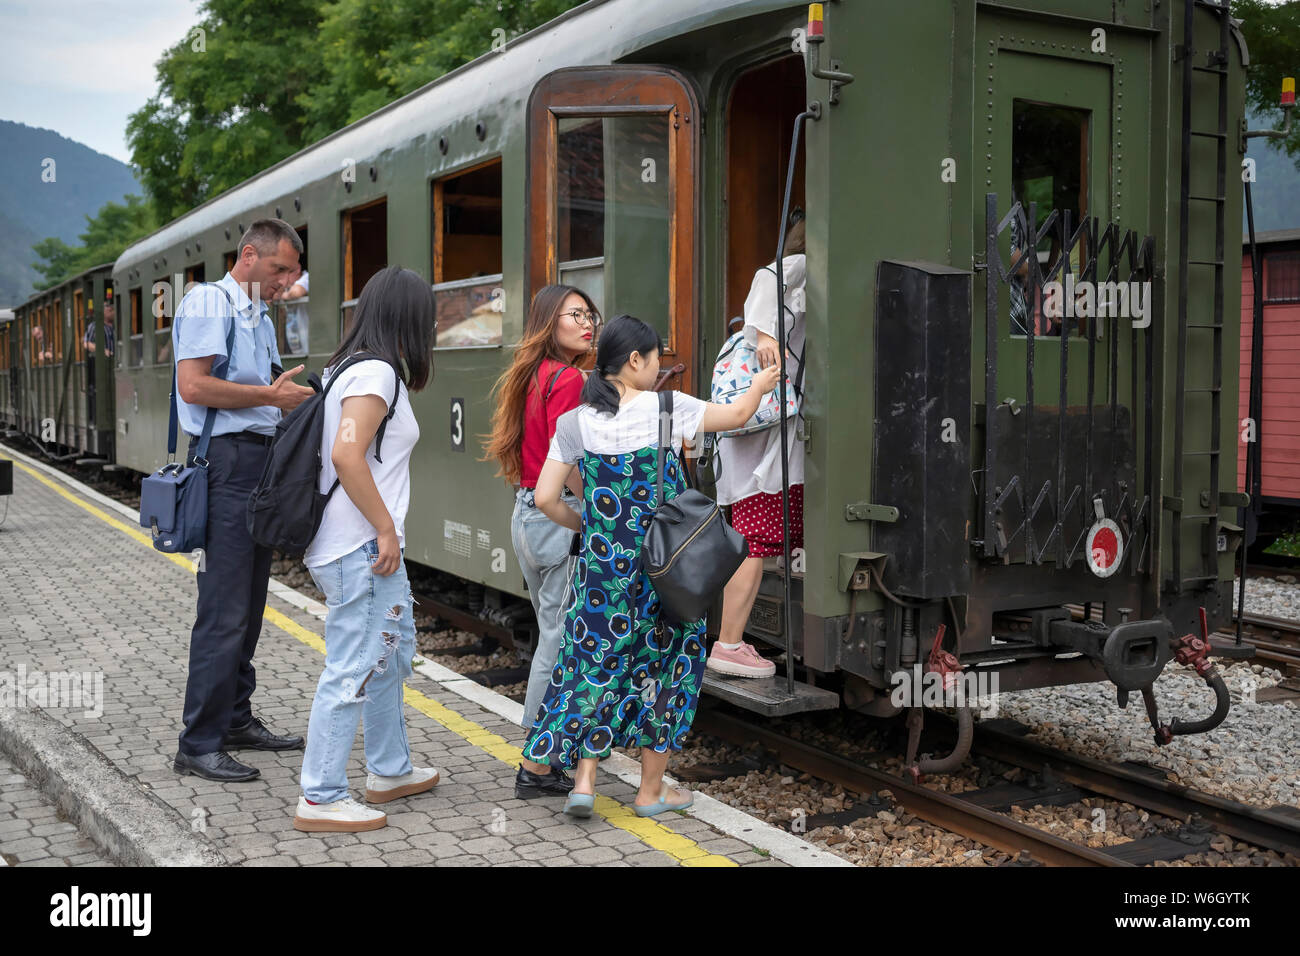 Serbia, el 22 de julio de 2019: Los pasajeros a bordo de un tren turístico para la osmica Šarganska Šargan (8) tour en Mokra Gora station Foto de stock